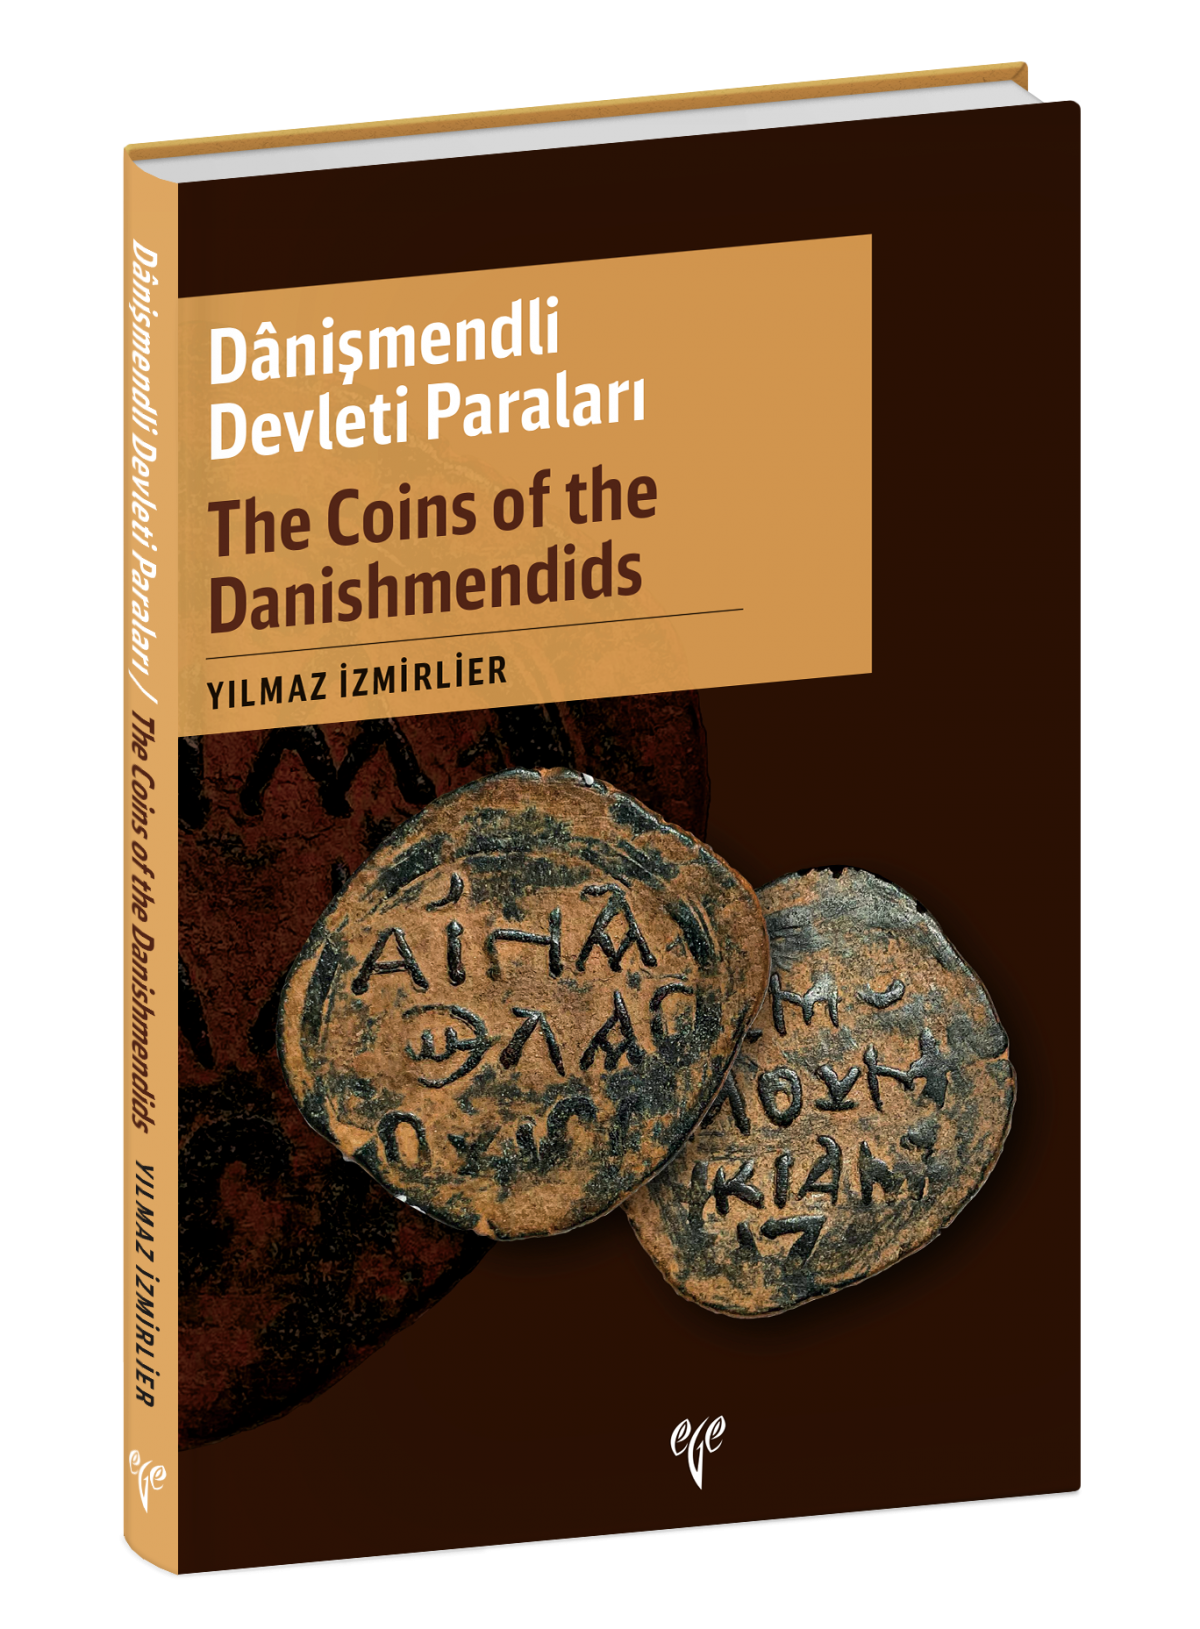 Danişmendli Devleti Paraları / The Coins of the Danishmendids